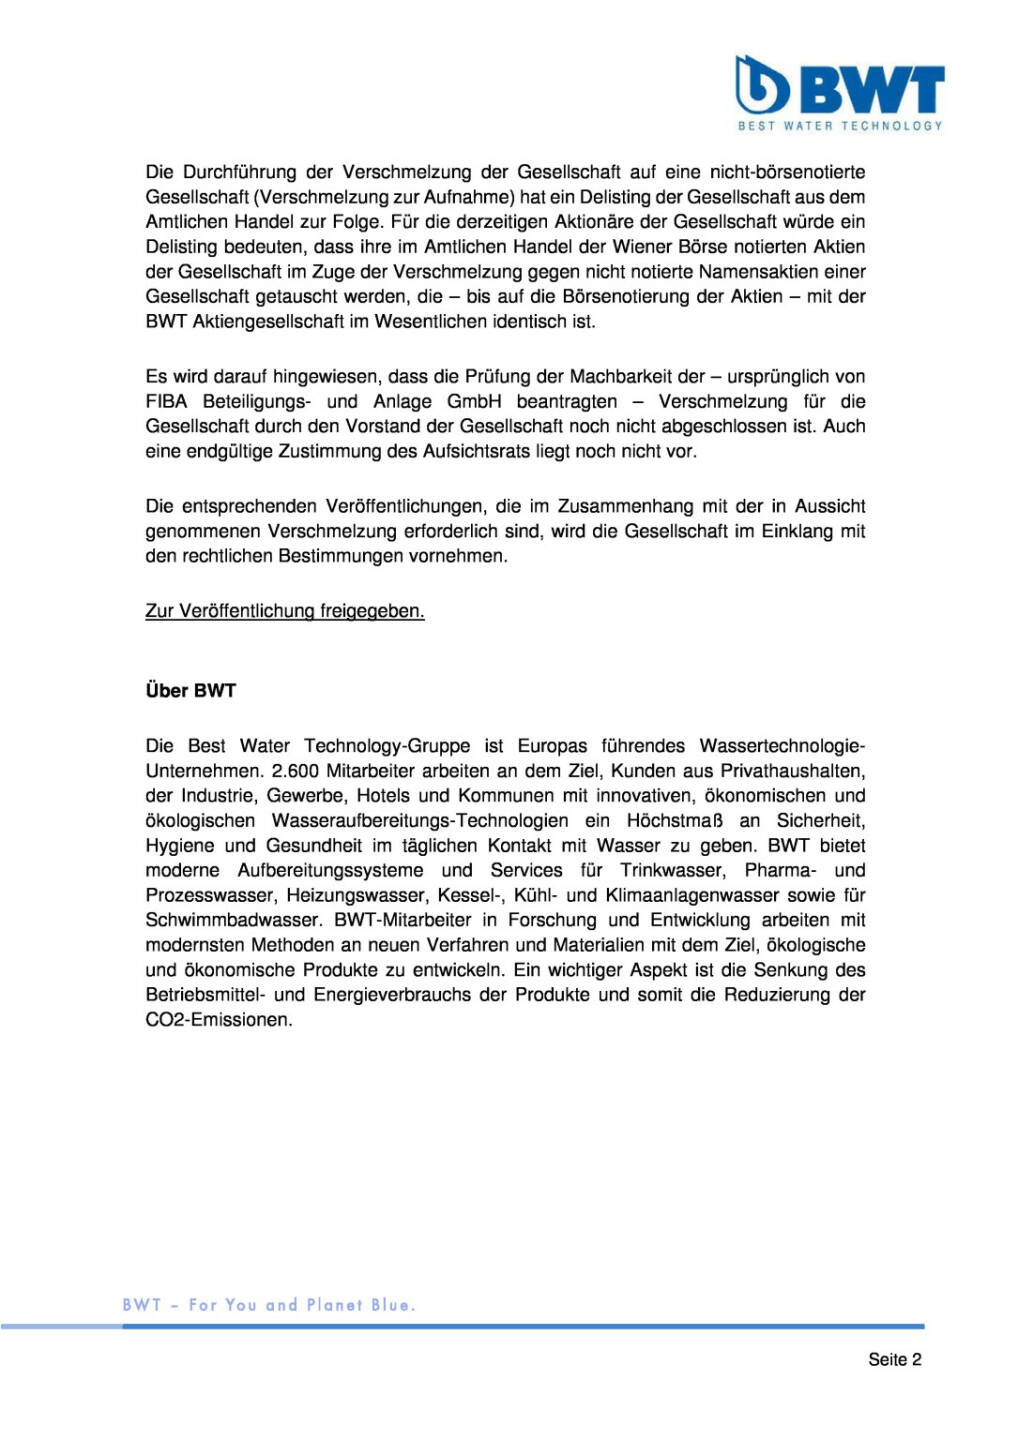 BWT: Verschmelzung auf nicht notierte Gesellschaft zum 31.12.2014 beabsichtigt, Seite 2/2, komplettes Dokument unter http://boerse-social.com/static/uploads/file_36_ende_der_borsennotierung_der_bwt.pdf